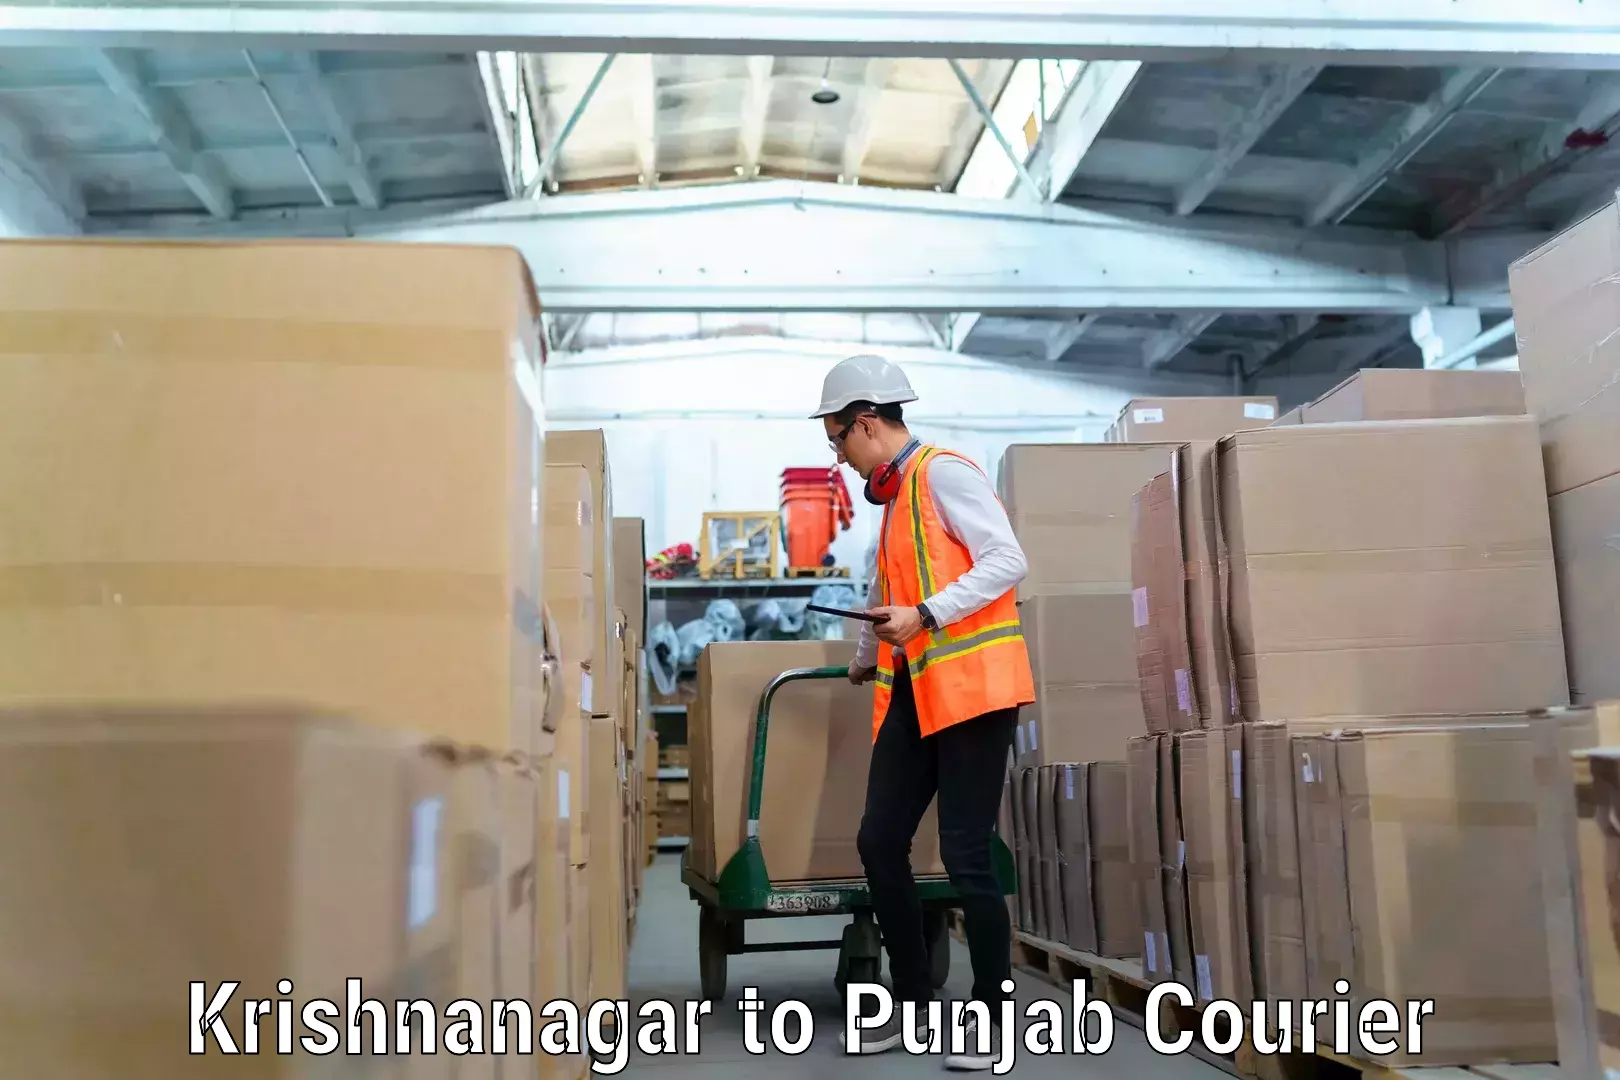 Furniture transport experts Krishnanagar to Punjab